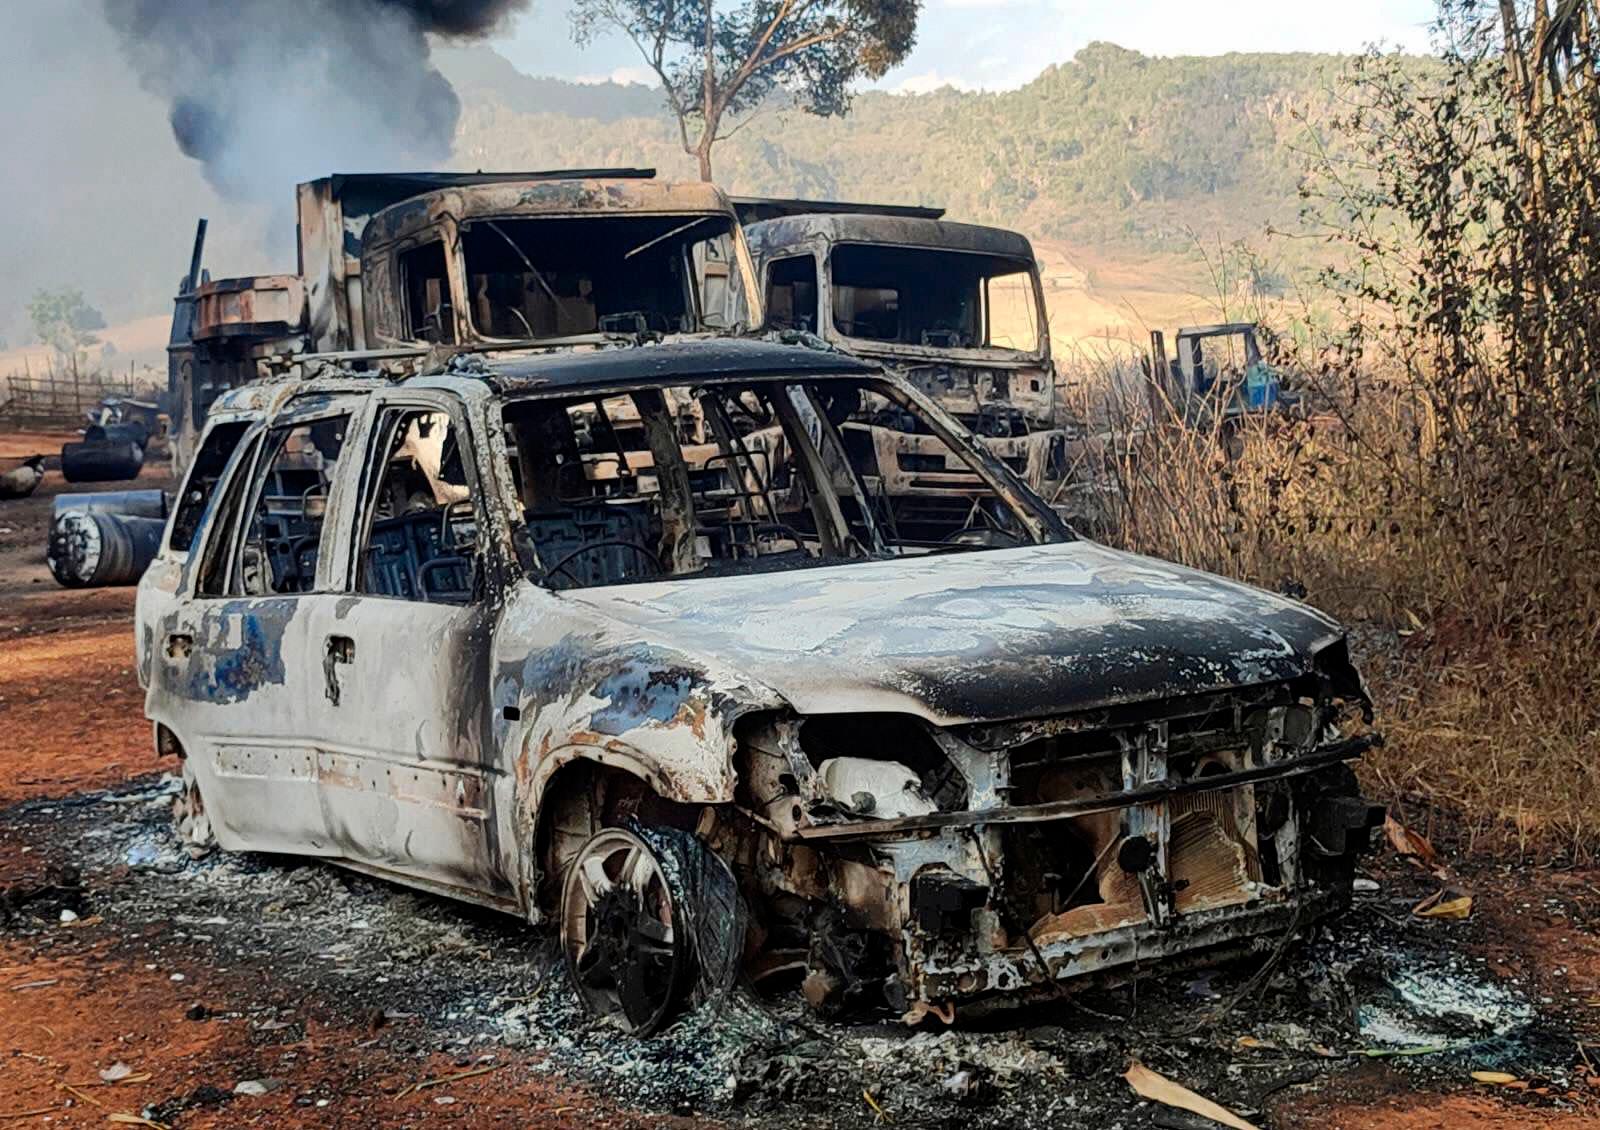 Rök stiger från de brinnande fordonen i Hpruso township i Kayah-staten i Myanmar. Fotot är taget av Karenni Nationalities Defense Force (KNDF). Enligt flera vittnen samlade Myanmars regeringstrupper in bybor i regionen, även kvinnor och barn, sköt ihjäl dem och satte eld på kropparna. Över 30 personer ska ha dödats enligt vittnena.